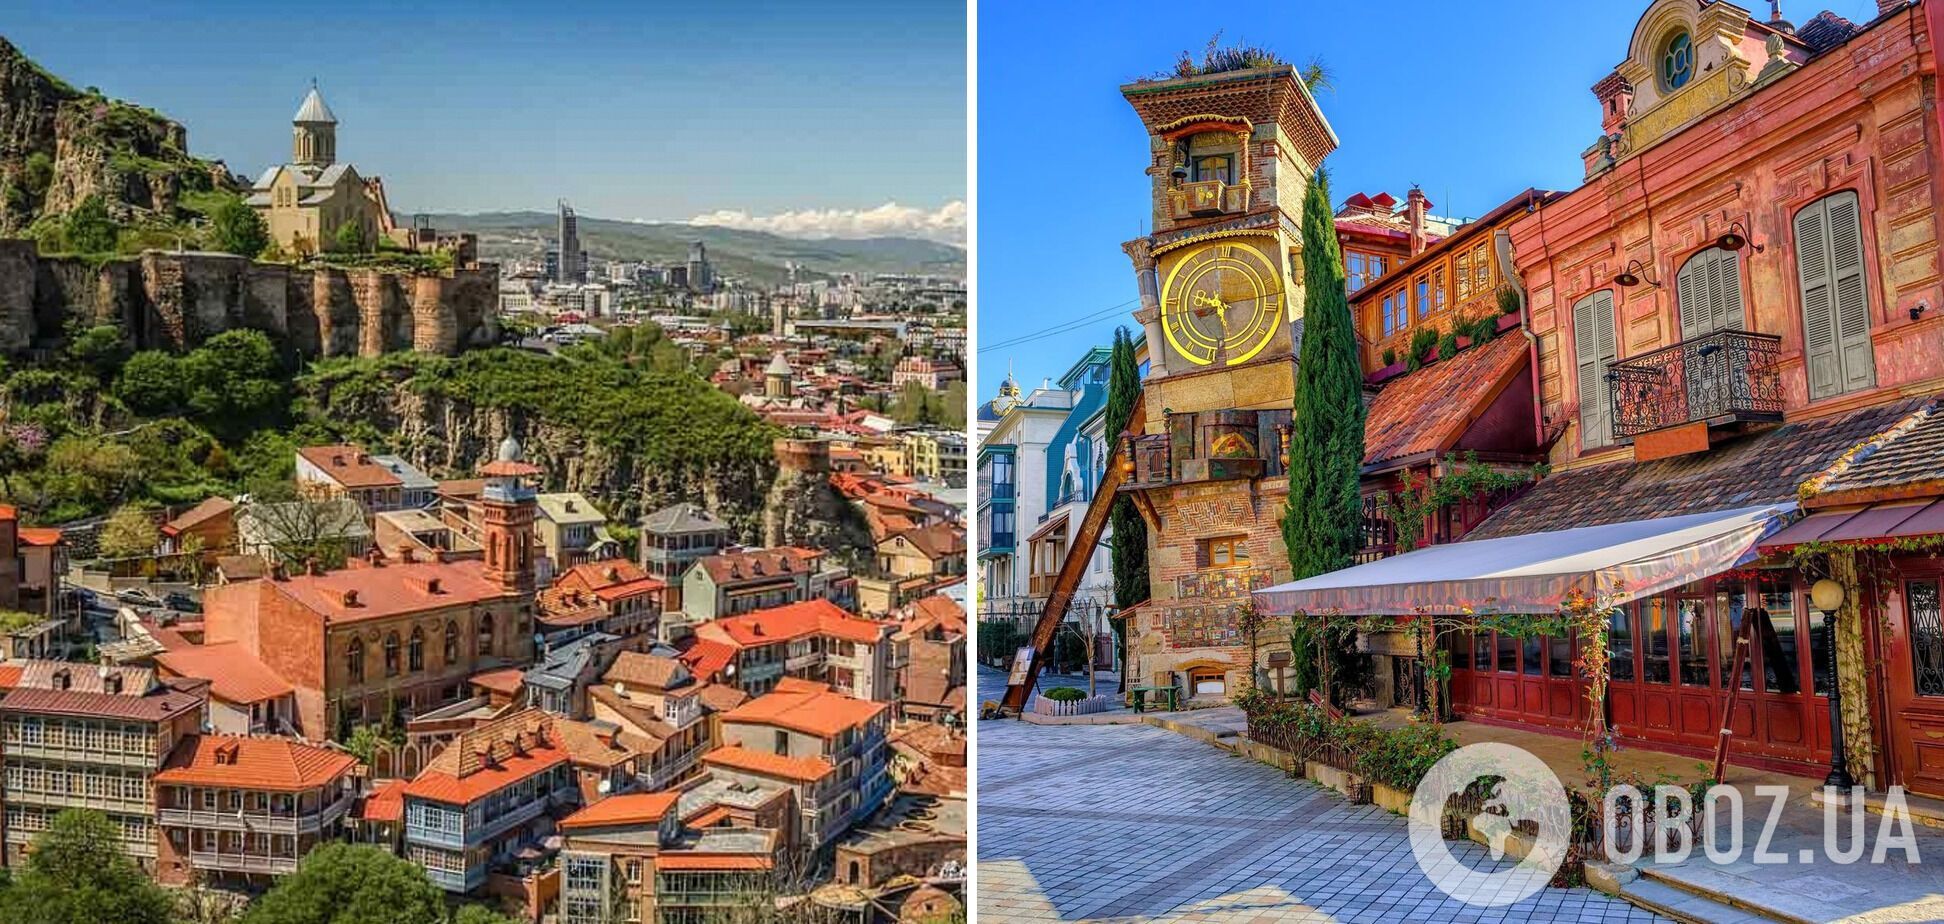 Тбилиси является самым дешевым городом в Европе